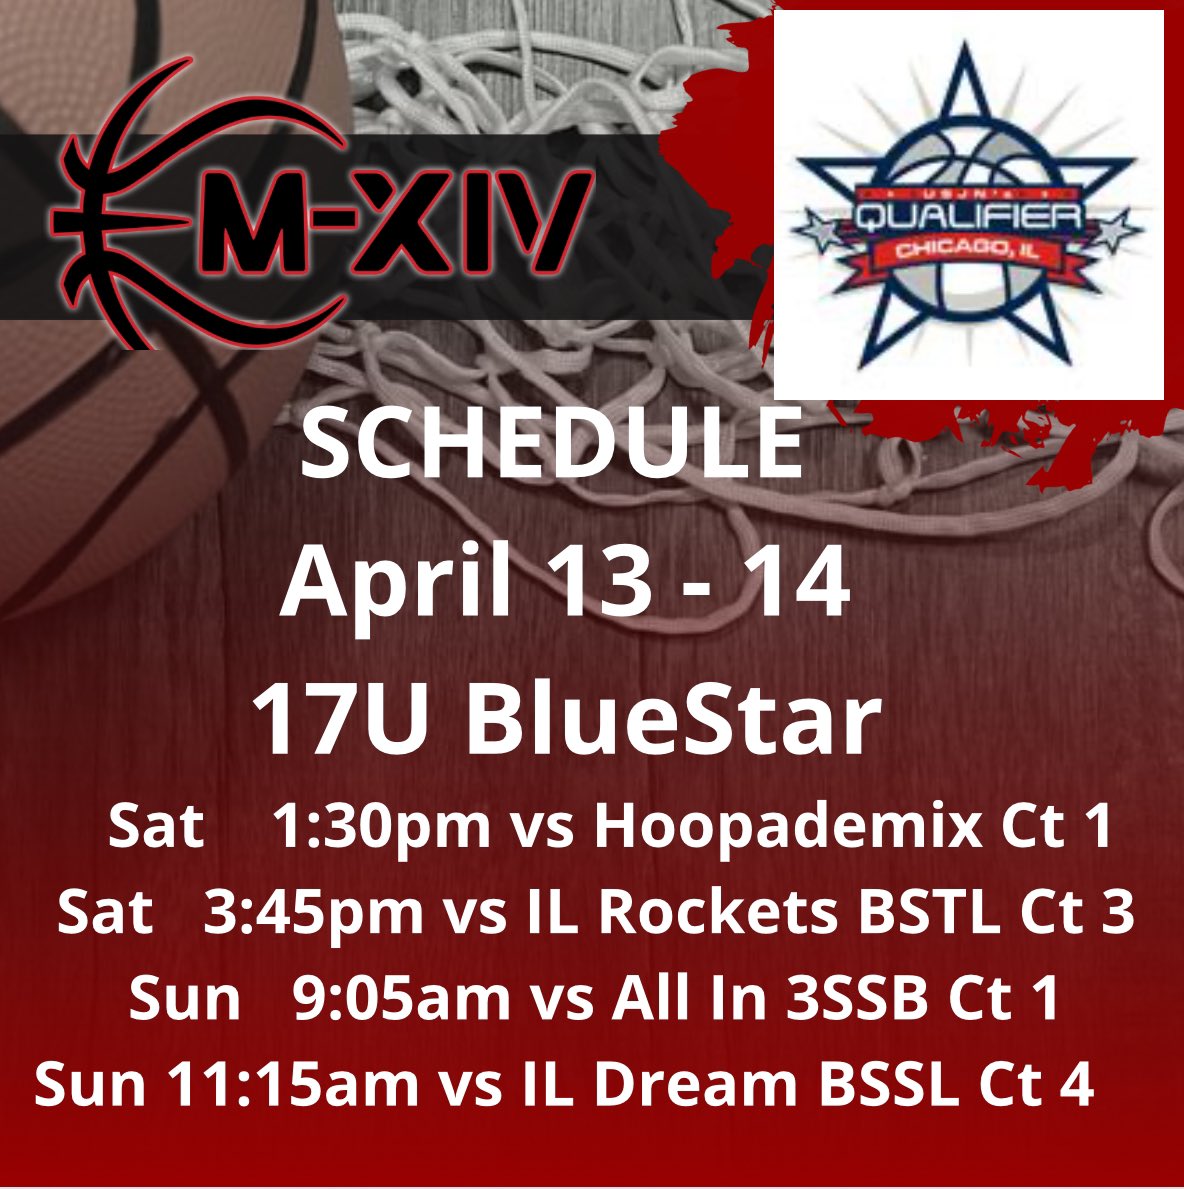 ✅ Tournament Schedule Alert
📸 17U BlueStar
✈️ Chicago
🗓 April 13 - 14
#Repthe14